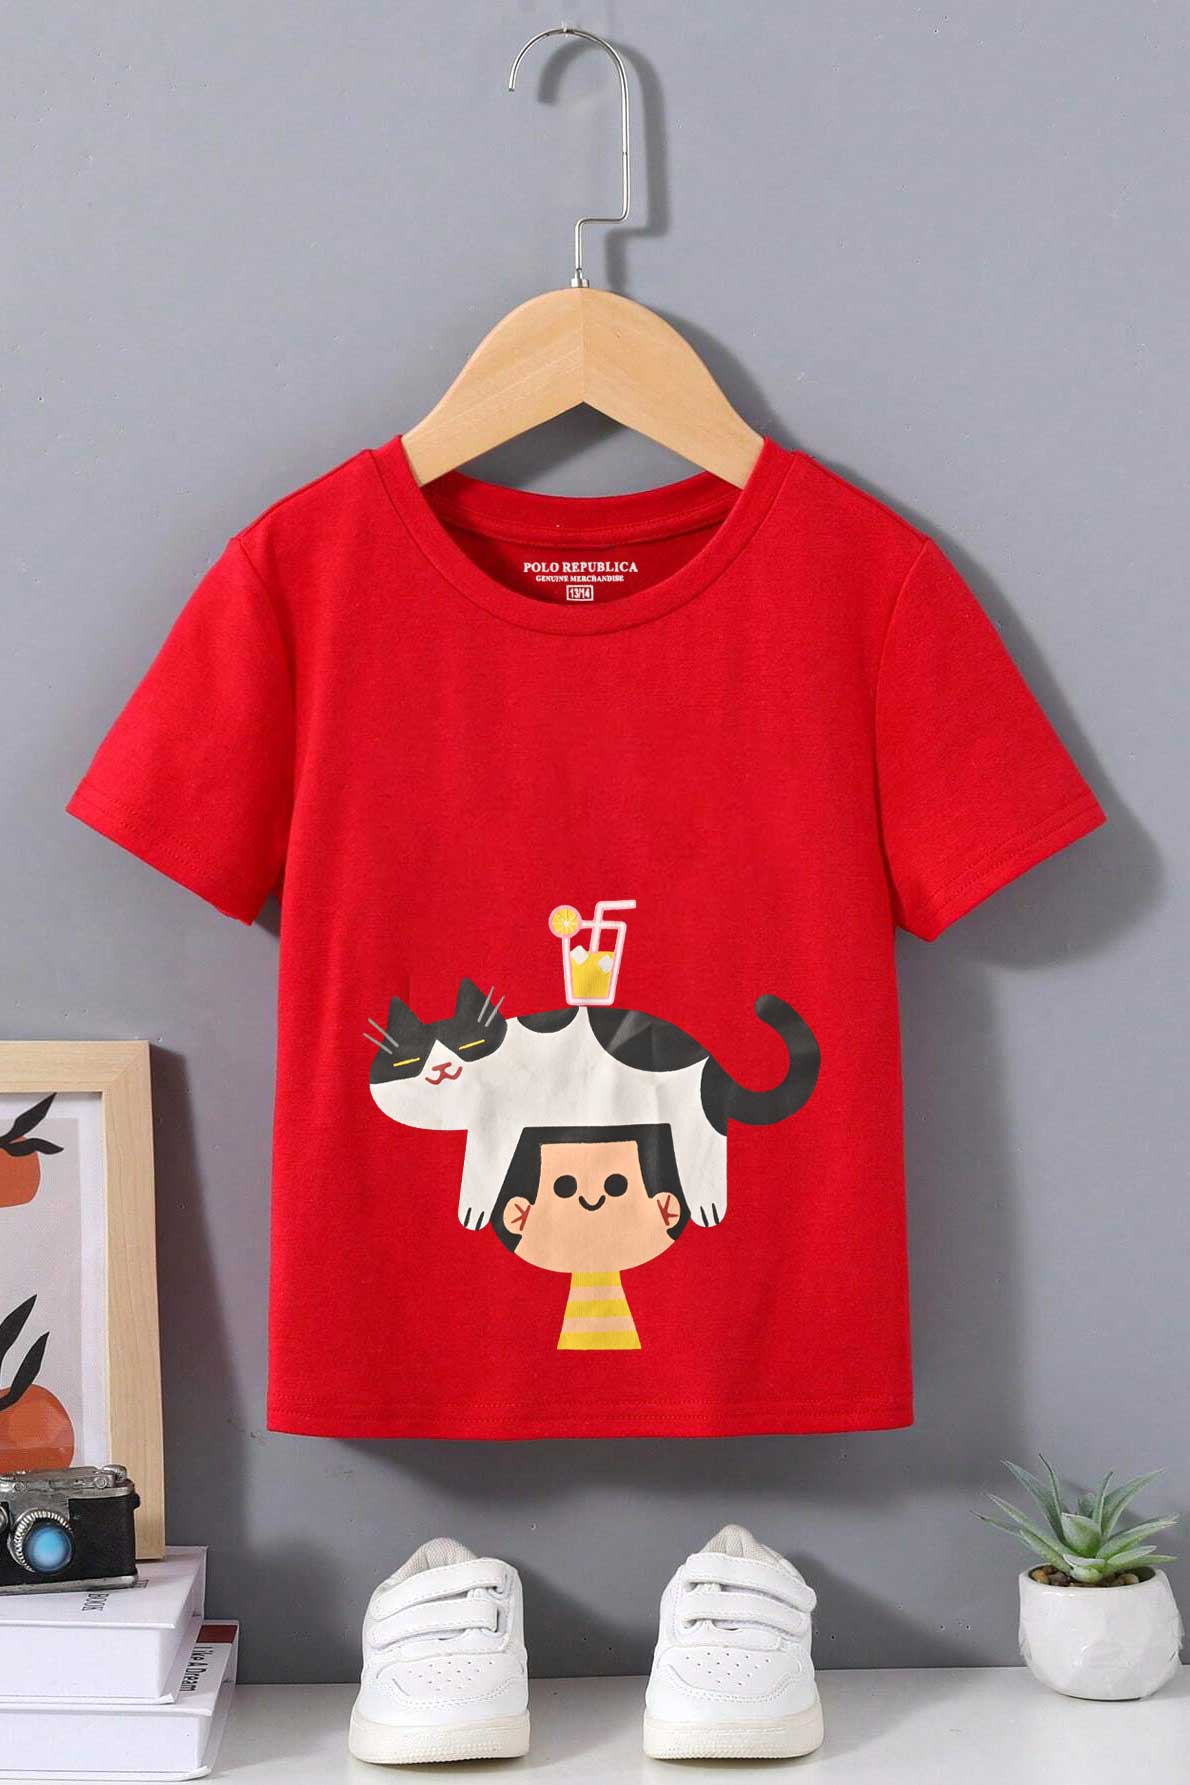 Polo Republica Boy's Cats Boy Printed Tee Shirt Boy's Tee Shirt Polo Republica Red 1-2 Years 